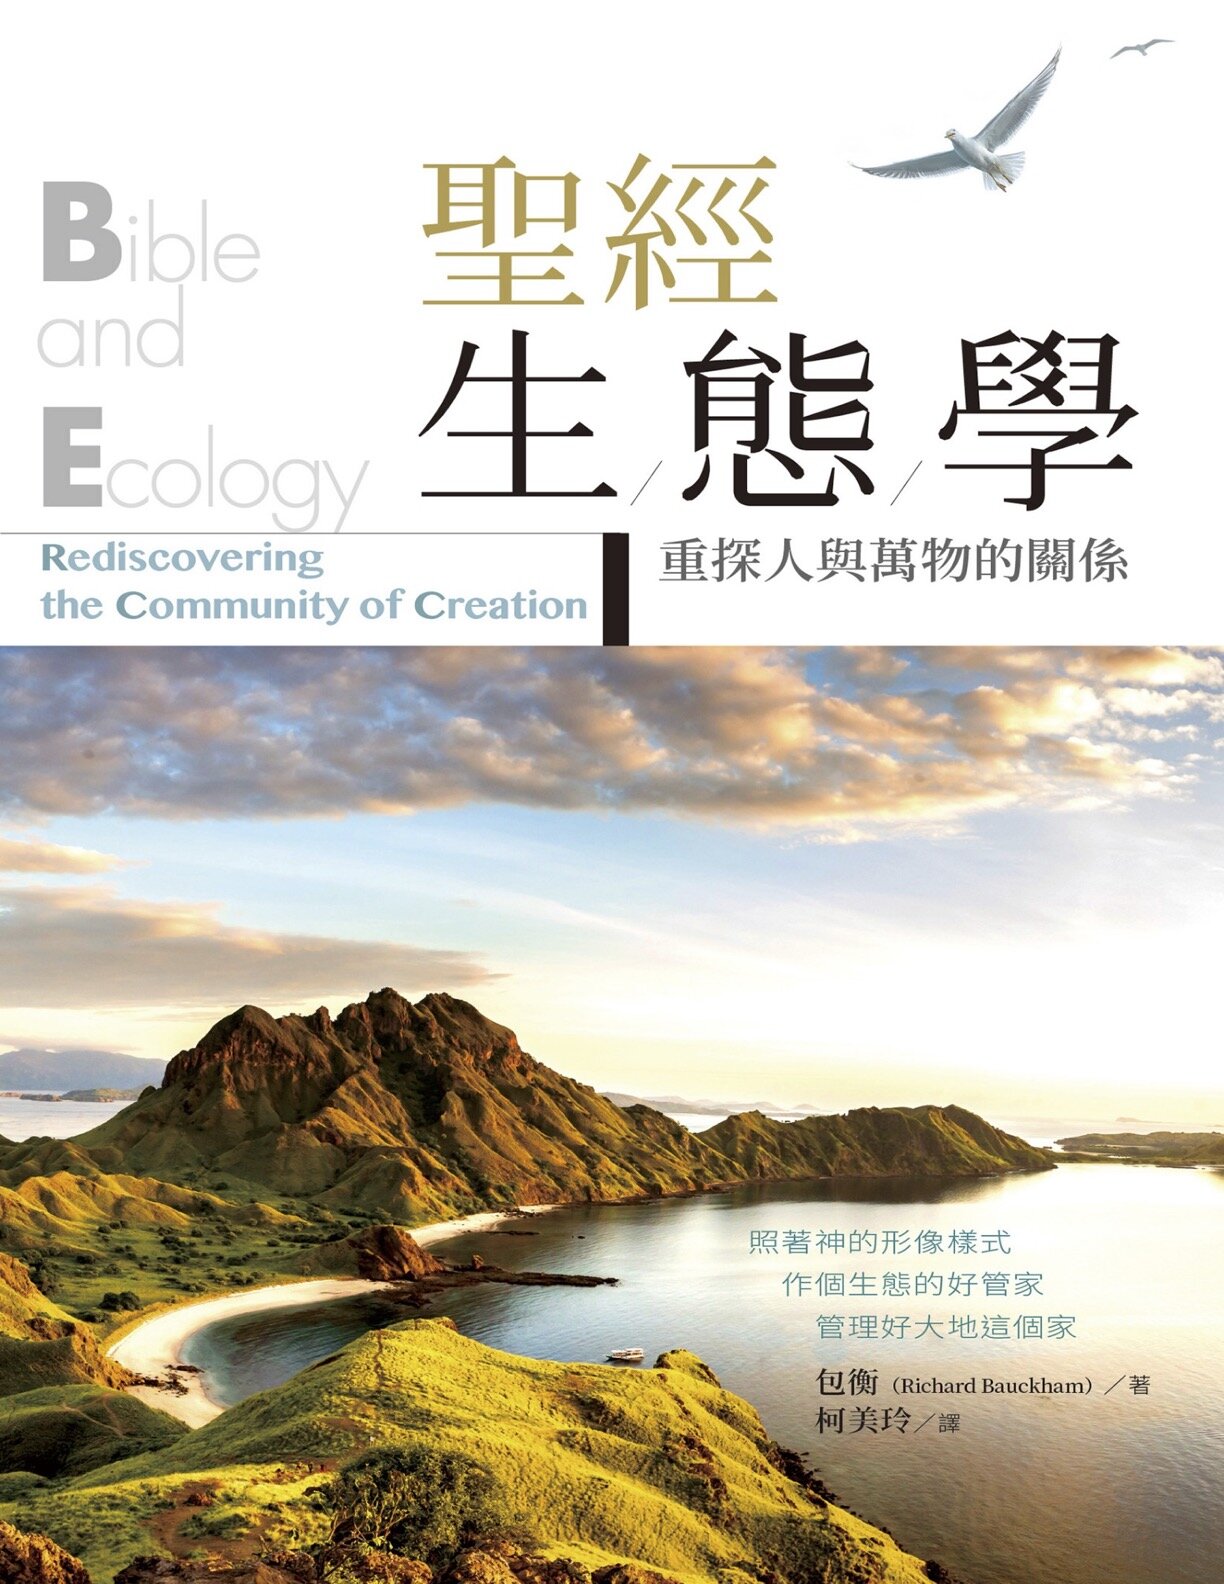 聖經生態學：重探人與萬物的關係 (繁體) Bible and Ecology: Rediscovering the Community of Creation (Traditional Chinese)